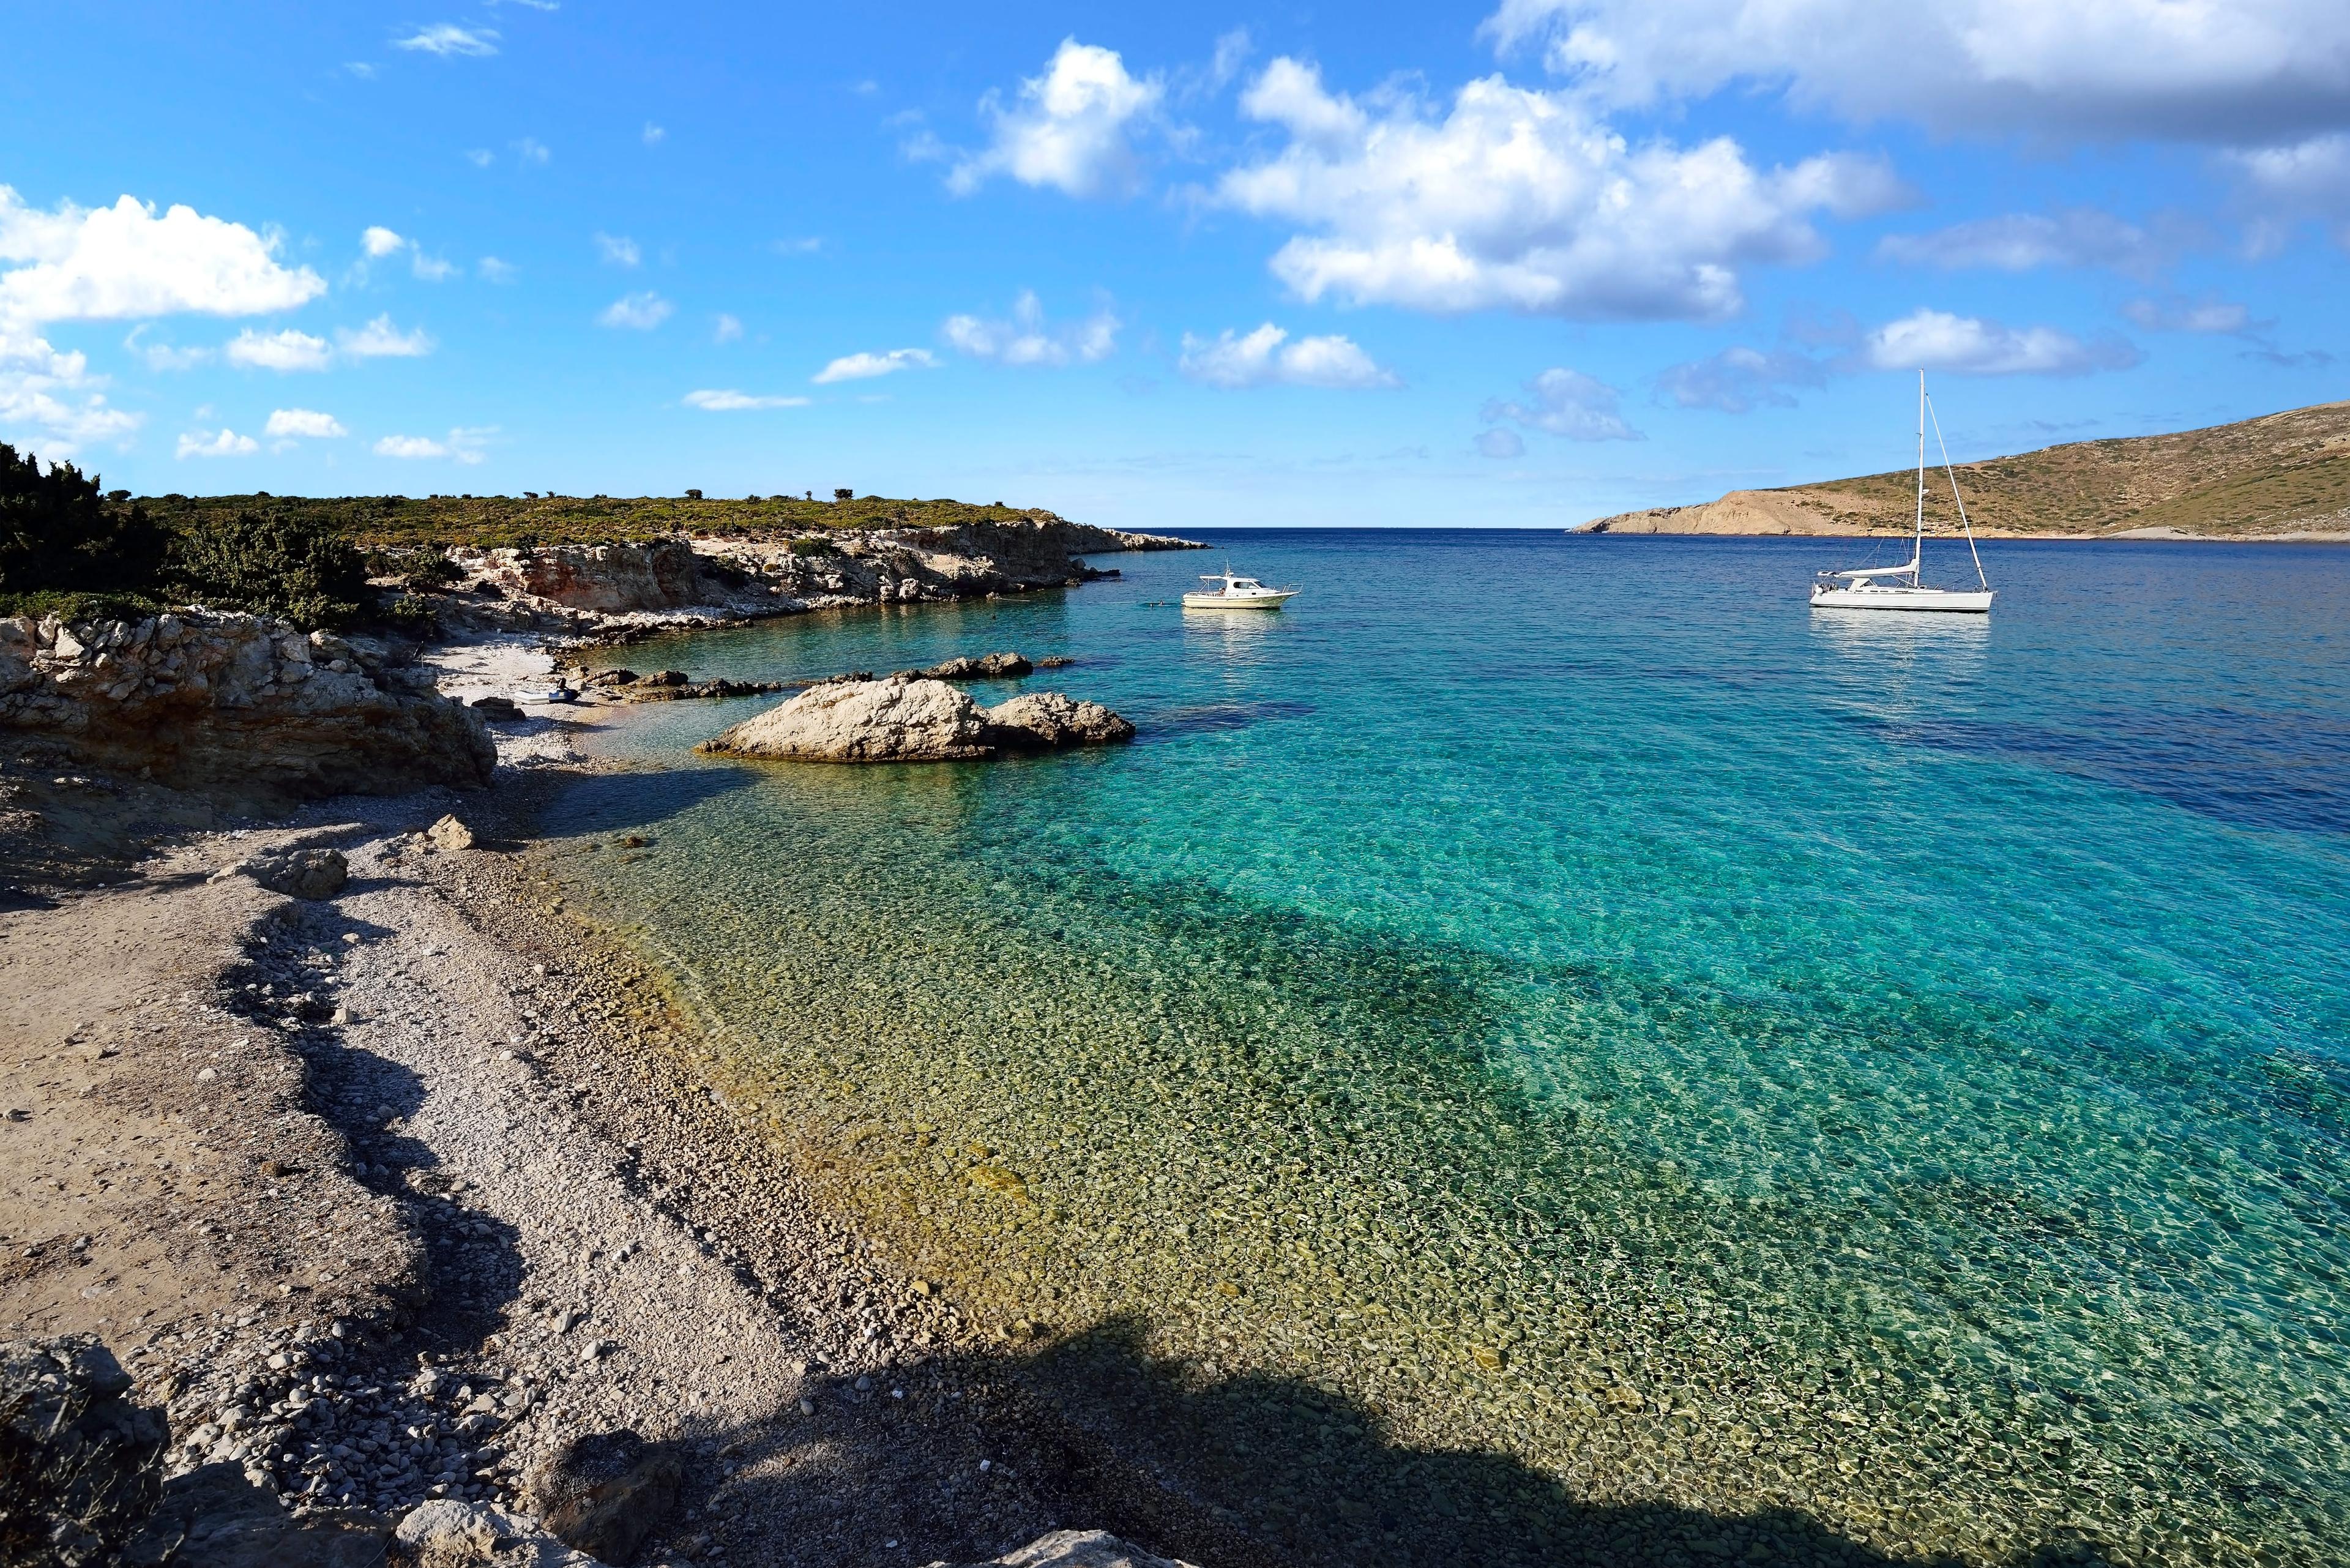 ▷ Balade en bateau pirate sur les trois îles de Kalymnos